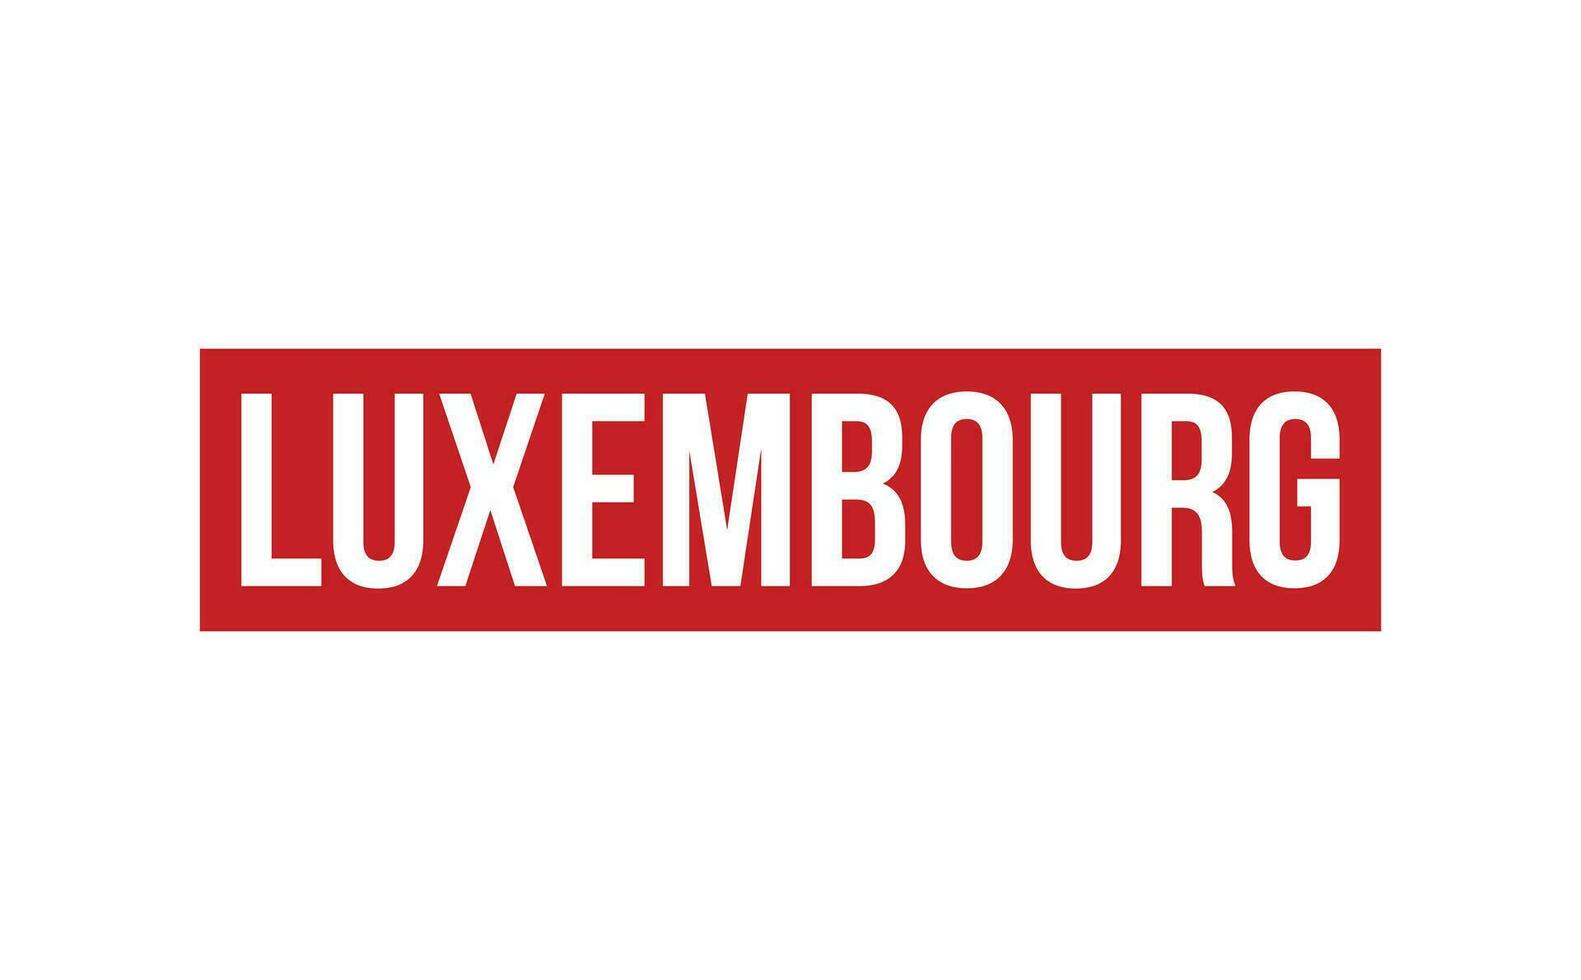 luxemburg sudd stämpel täta vektor